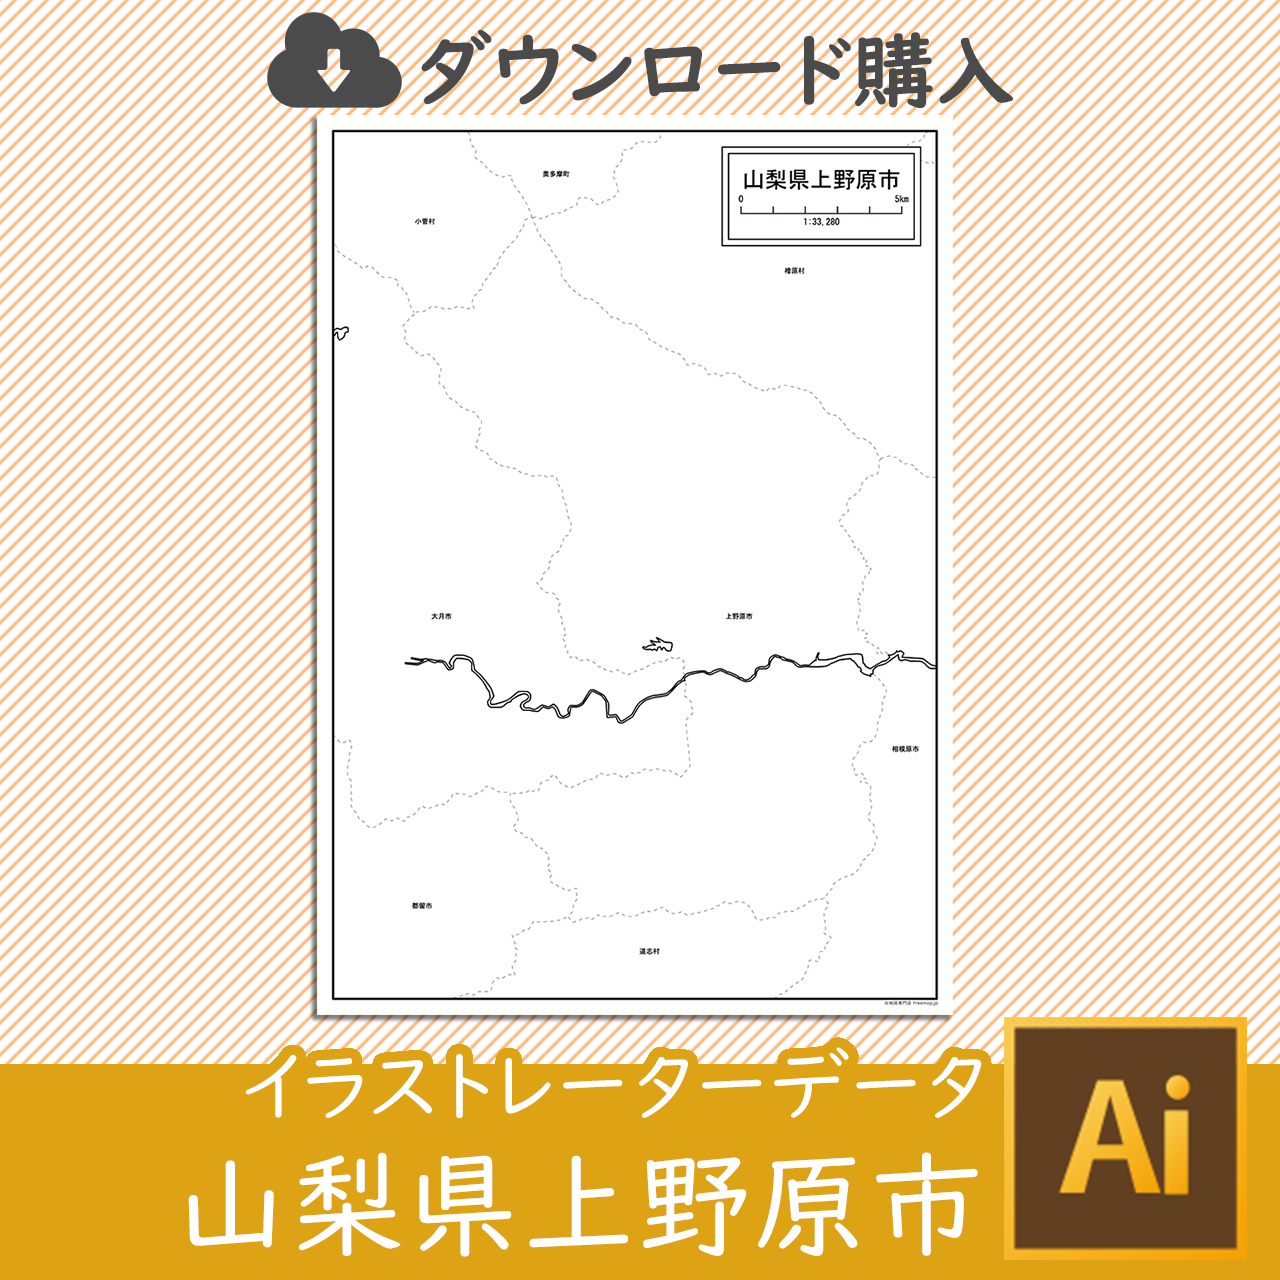 上野原市のaiデータのサムネイル画像